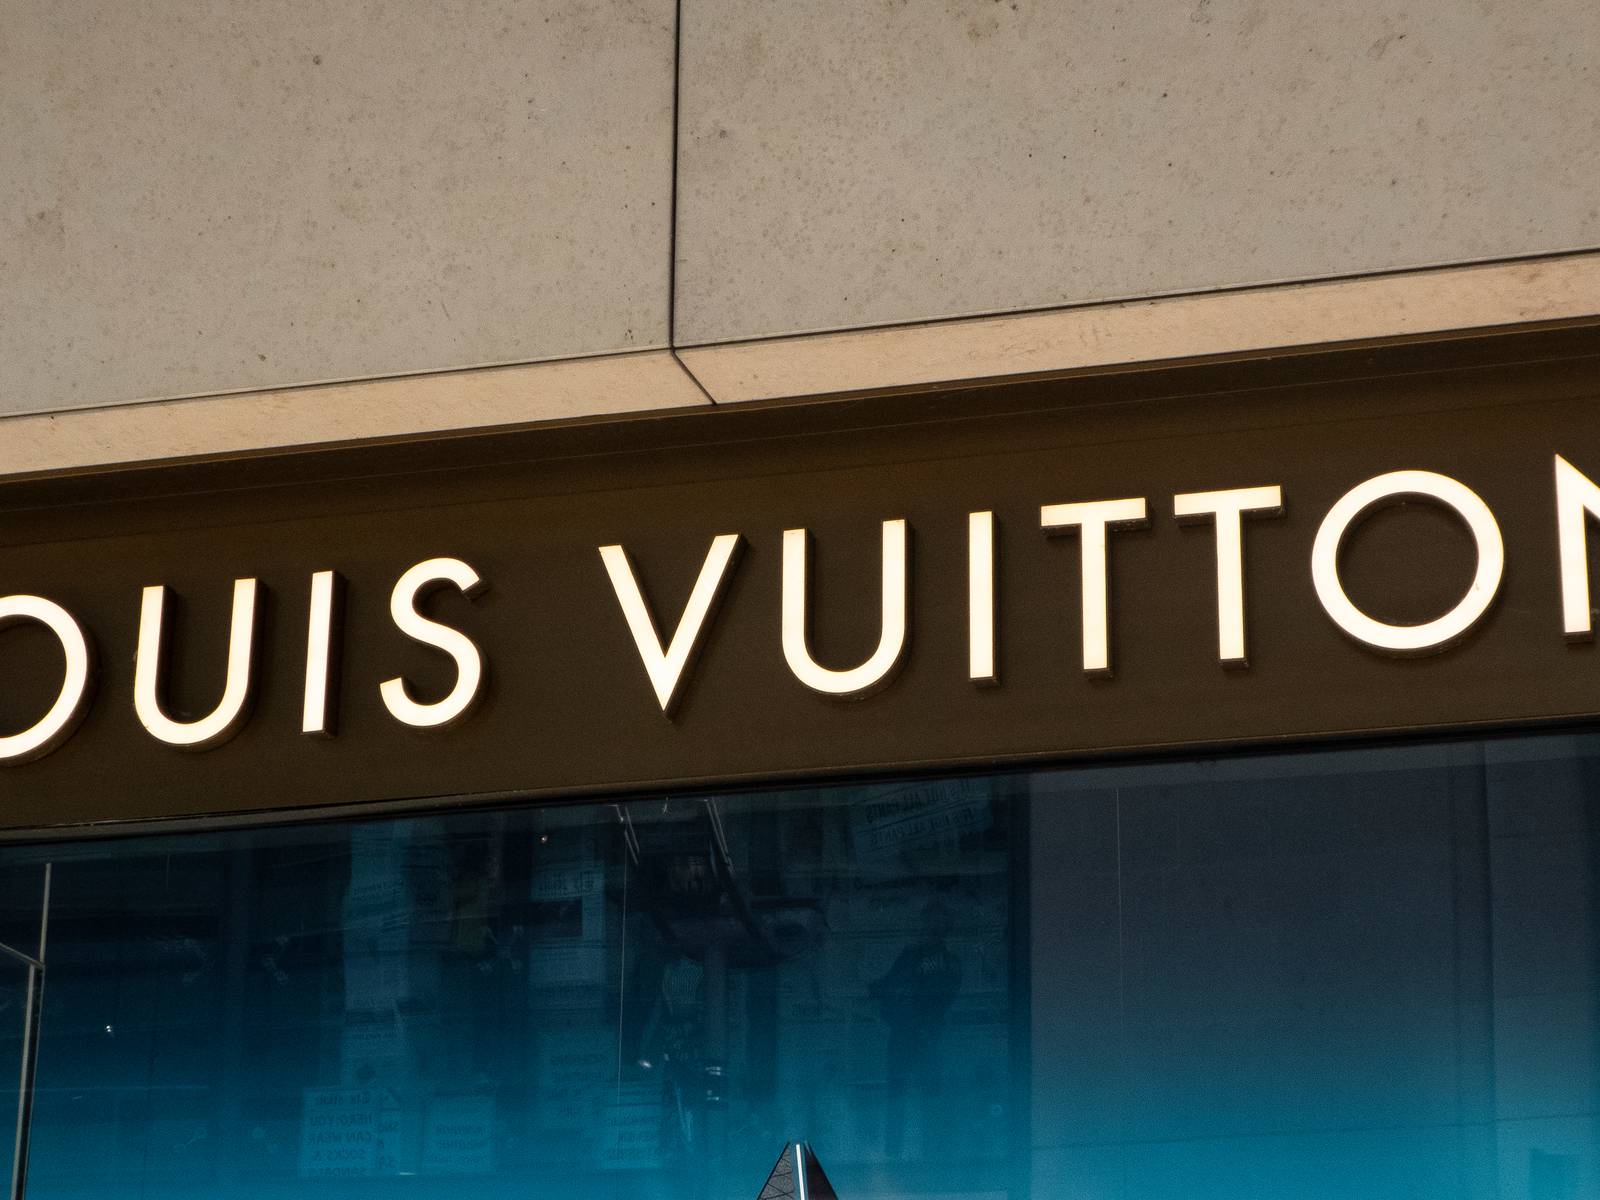 VISIT – LVMH – Project Luxury & Innovation - Parsons ParisParsons Paris